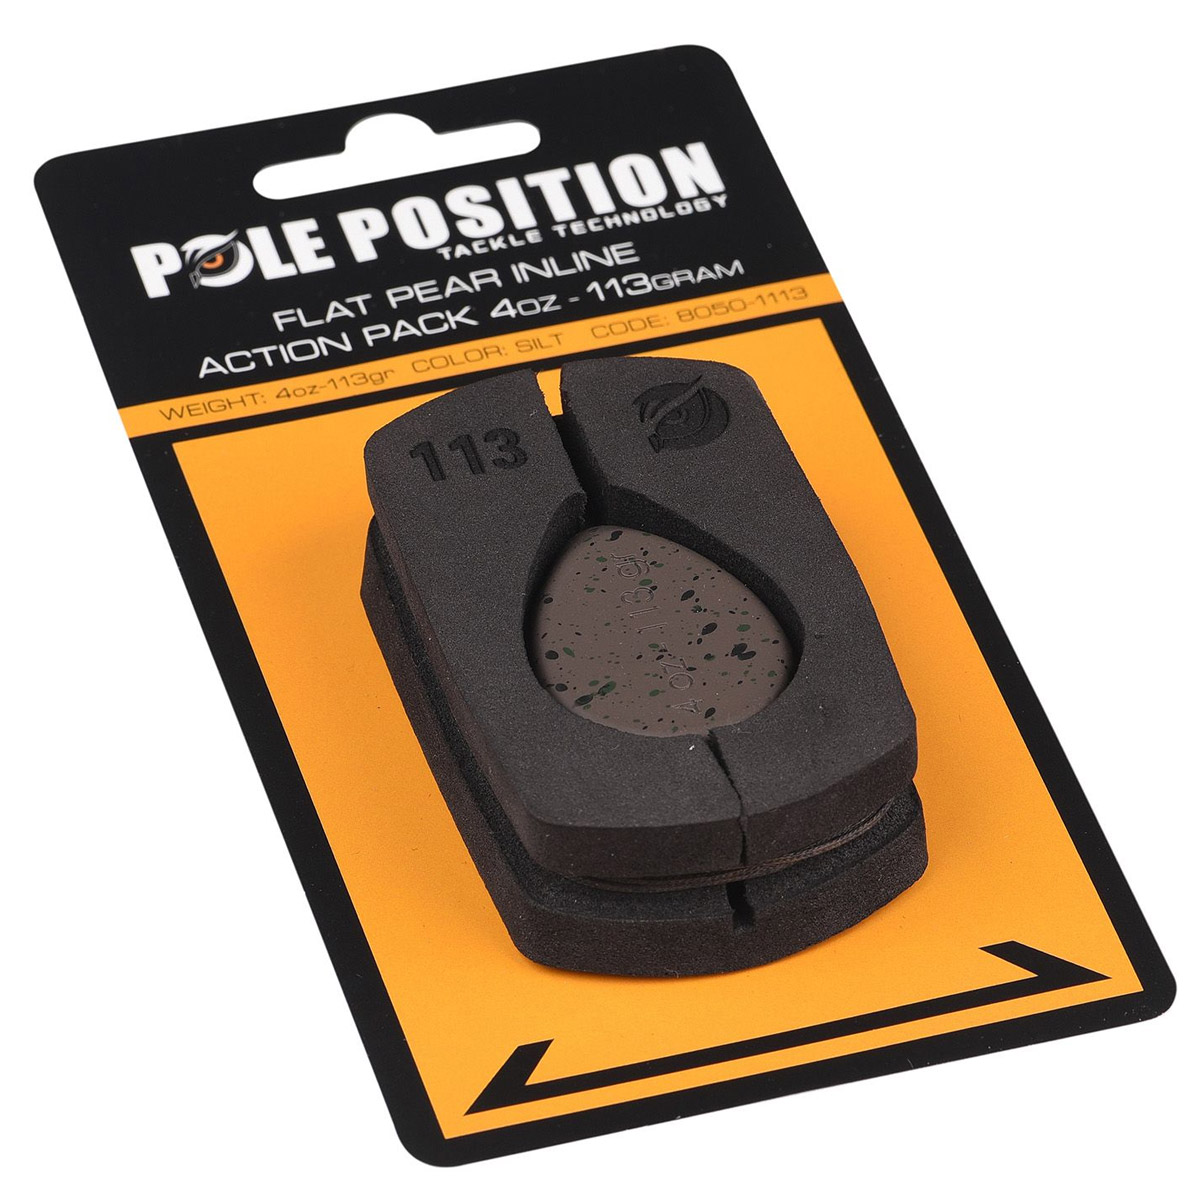 Pole Position Flat Pear Inline Action Pack -  56 gram -  71 gram -  113 gram -  85 gram -  99 gram